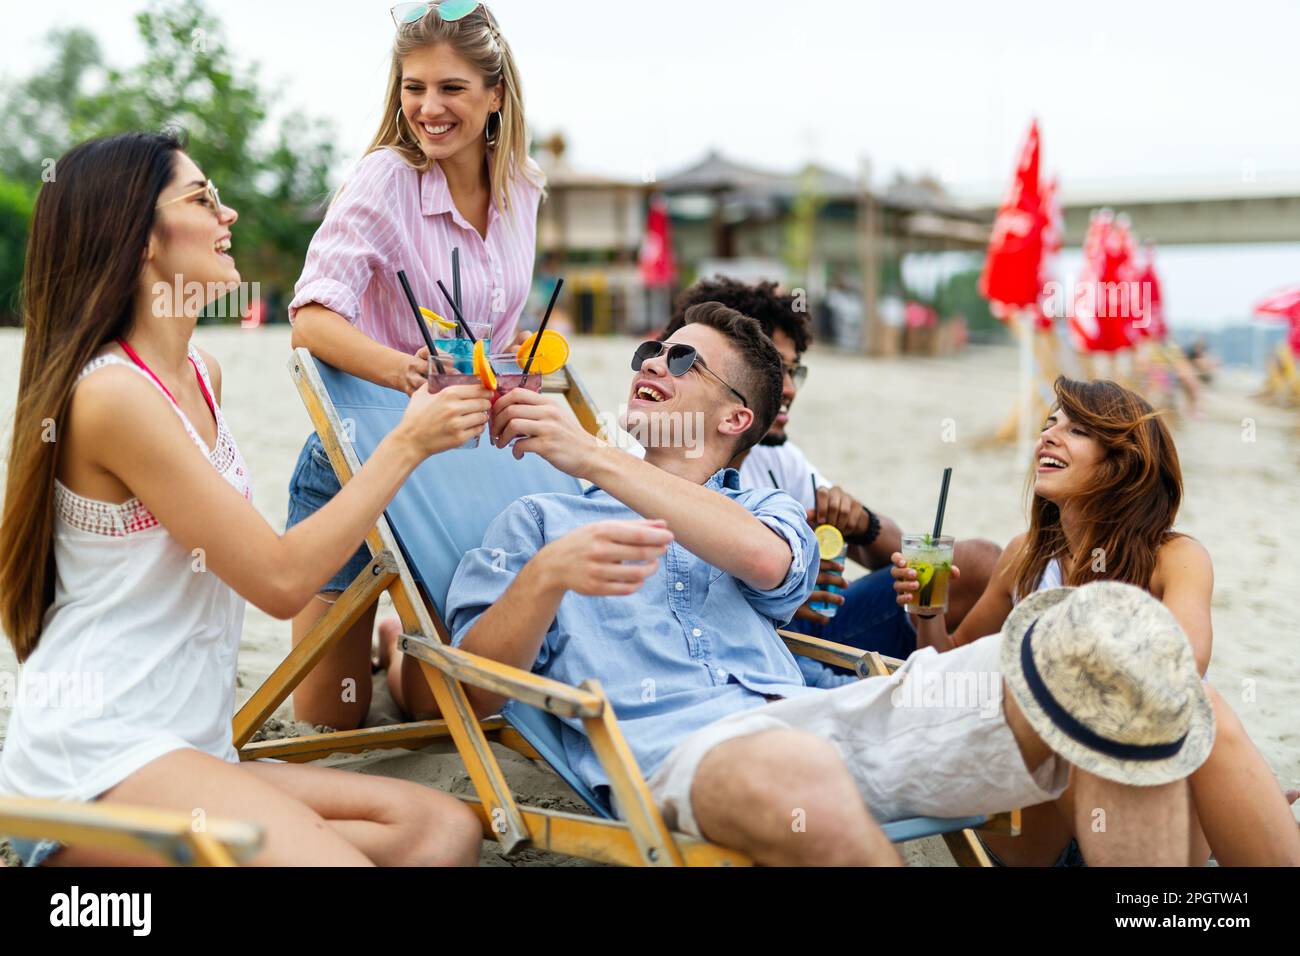 Groupe de jeunes amis qui s'amusent à la plage par une journée ensoleillée. Personnes vacances bonheur concept. Banque D'Images